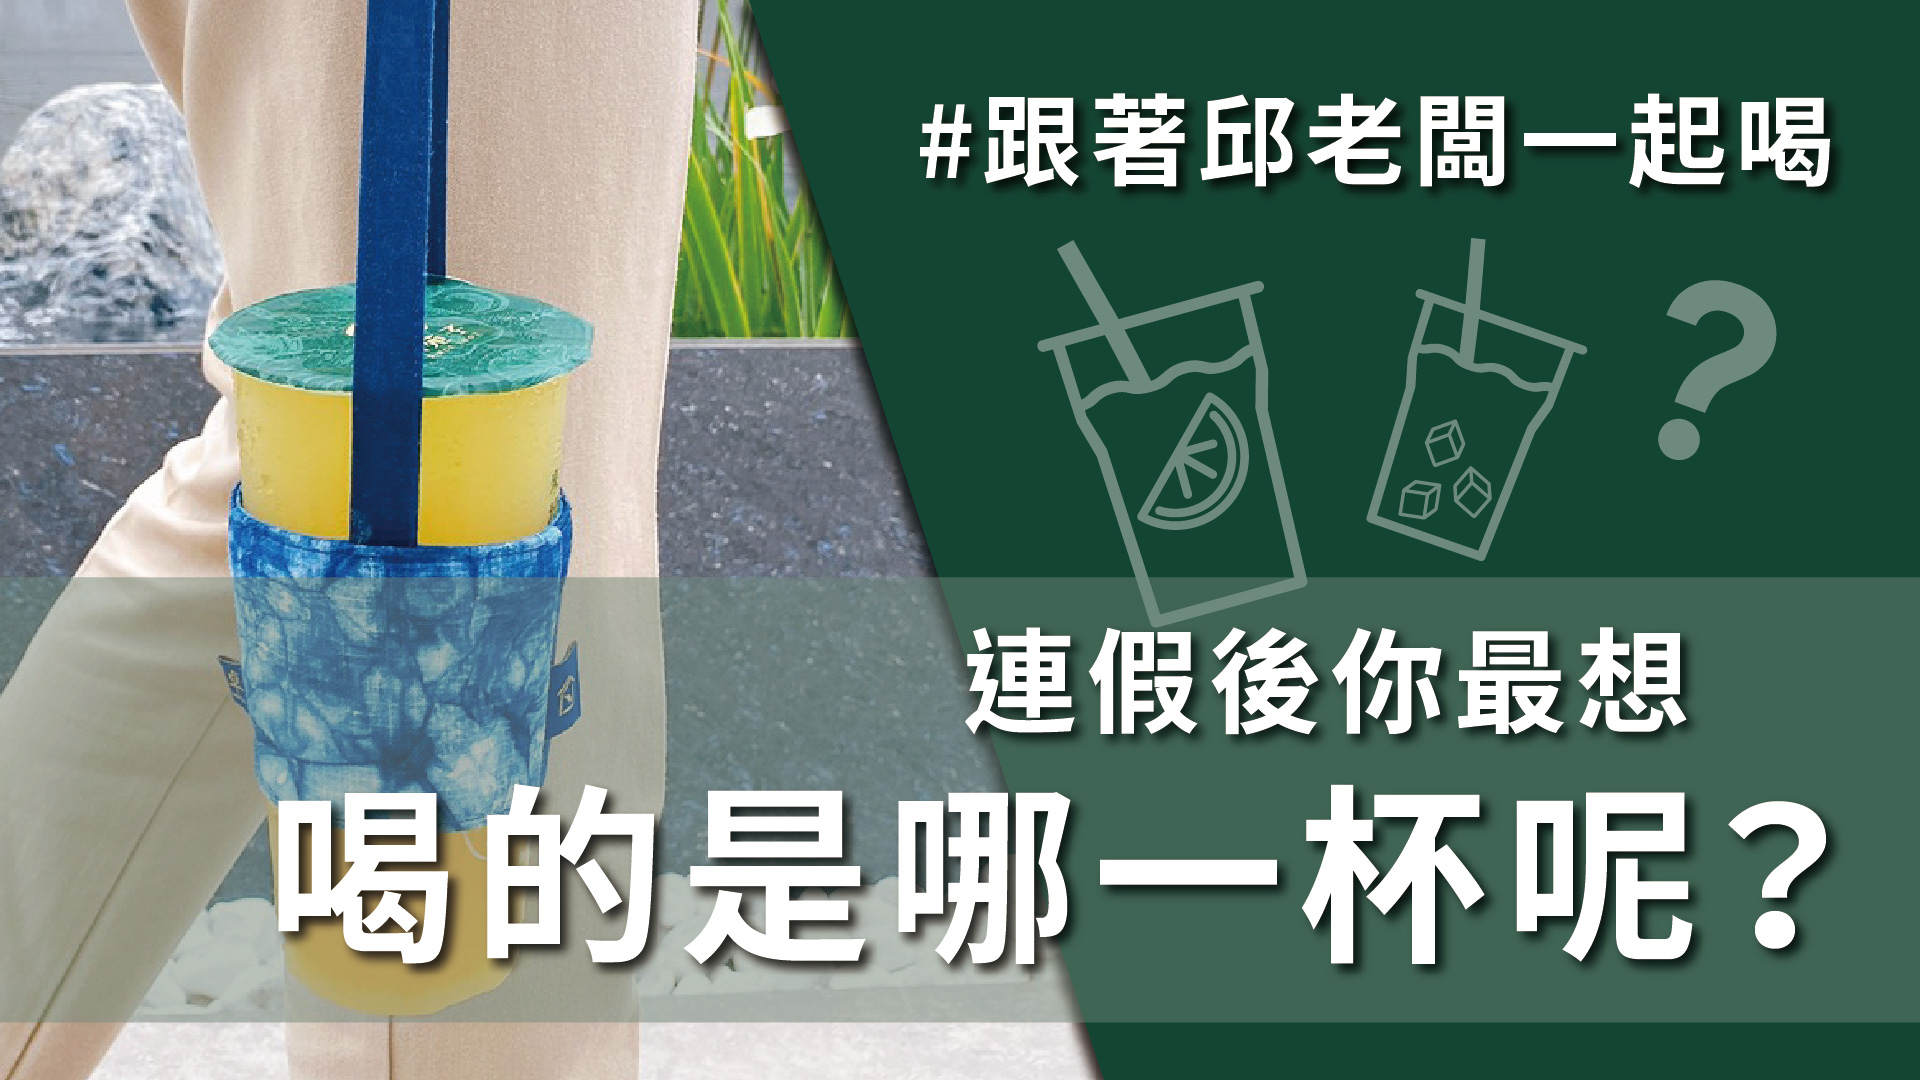 飲料控喝起乃! 台灣鮮搾柳橙綠，最清爽順口的口感!您一定要試看看! #3月2日 #DAY170